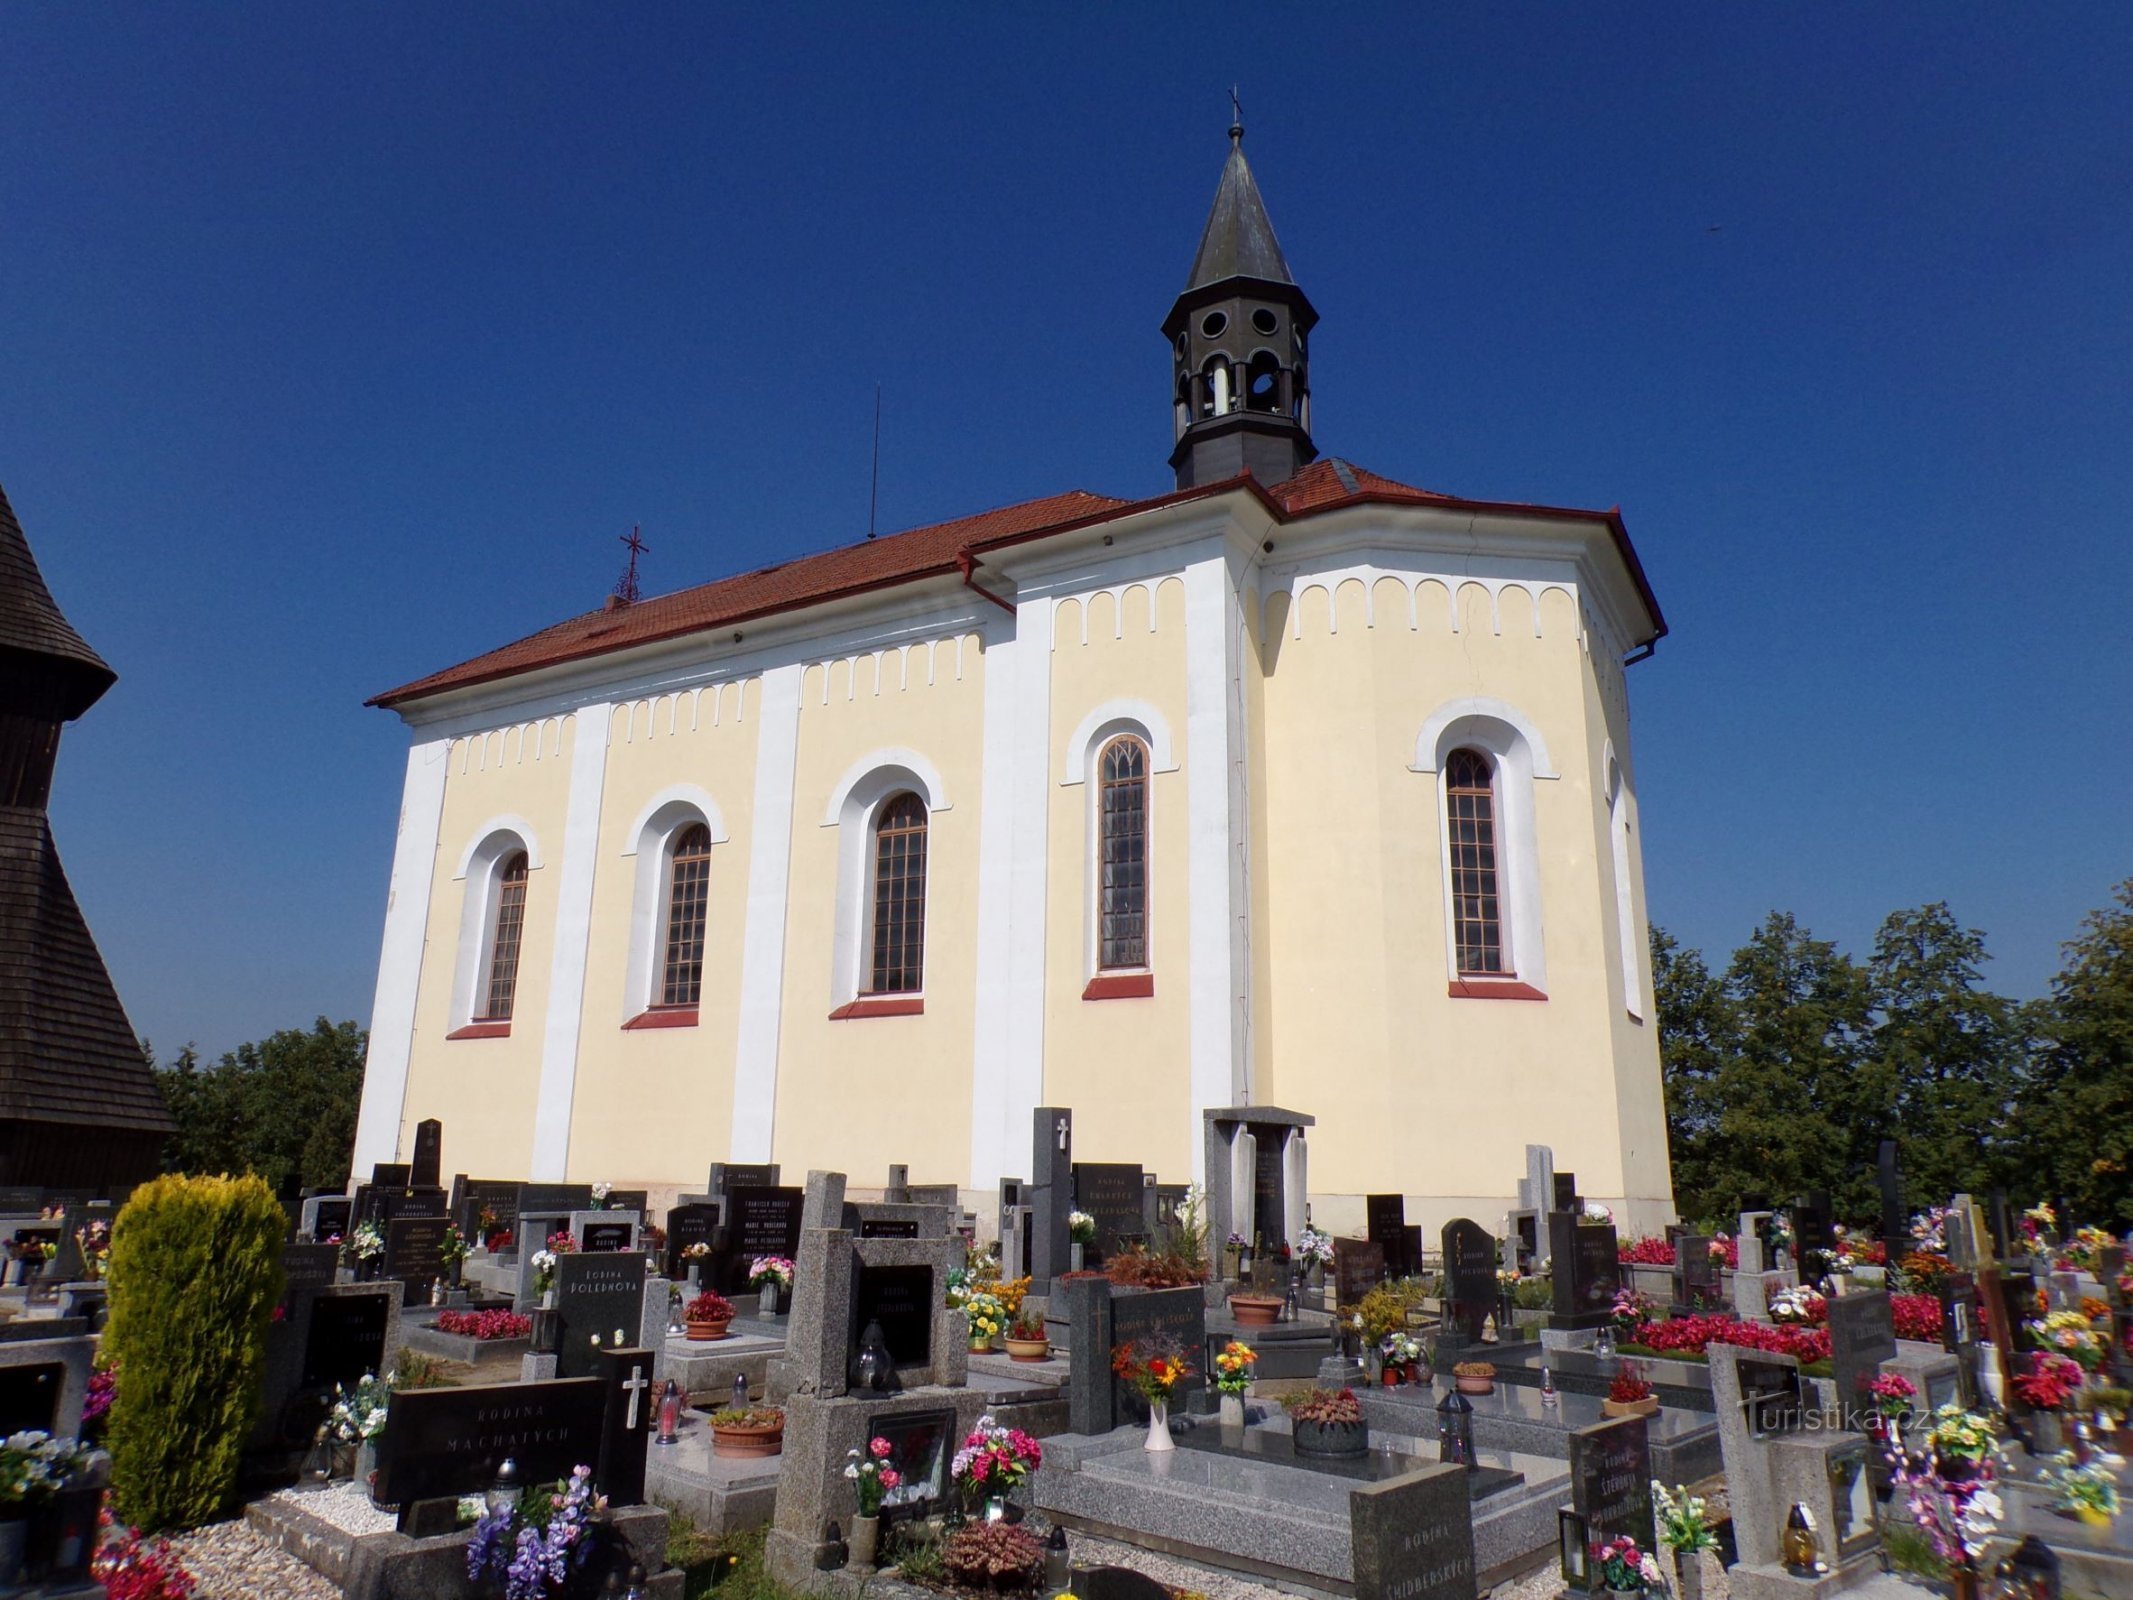 Church of St. Wenceslas (Horní Ředice, 3.9.2021/XNUMX/XNUMX)